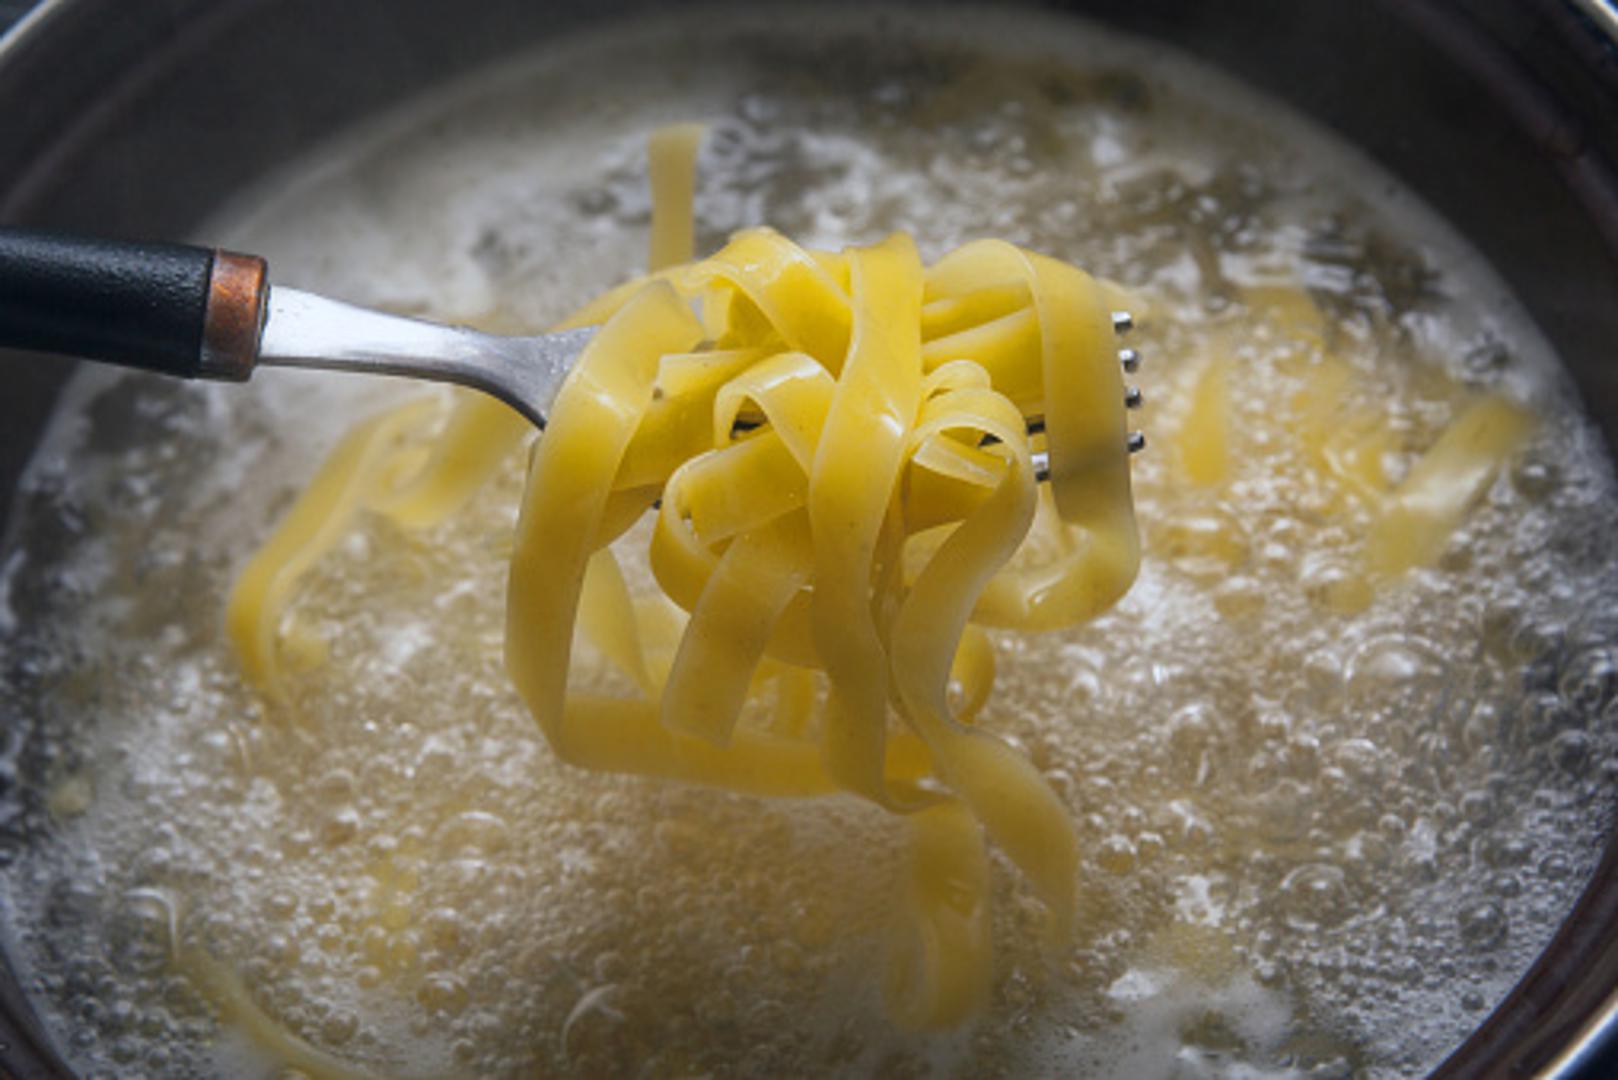 I mnogi kuhaju tjesteninu u vodi s dodatkom soli, a onda tu vodu jednostavno izliju u sudoper. Kakva pogreška.